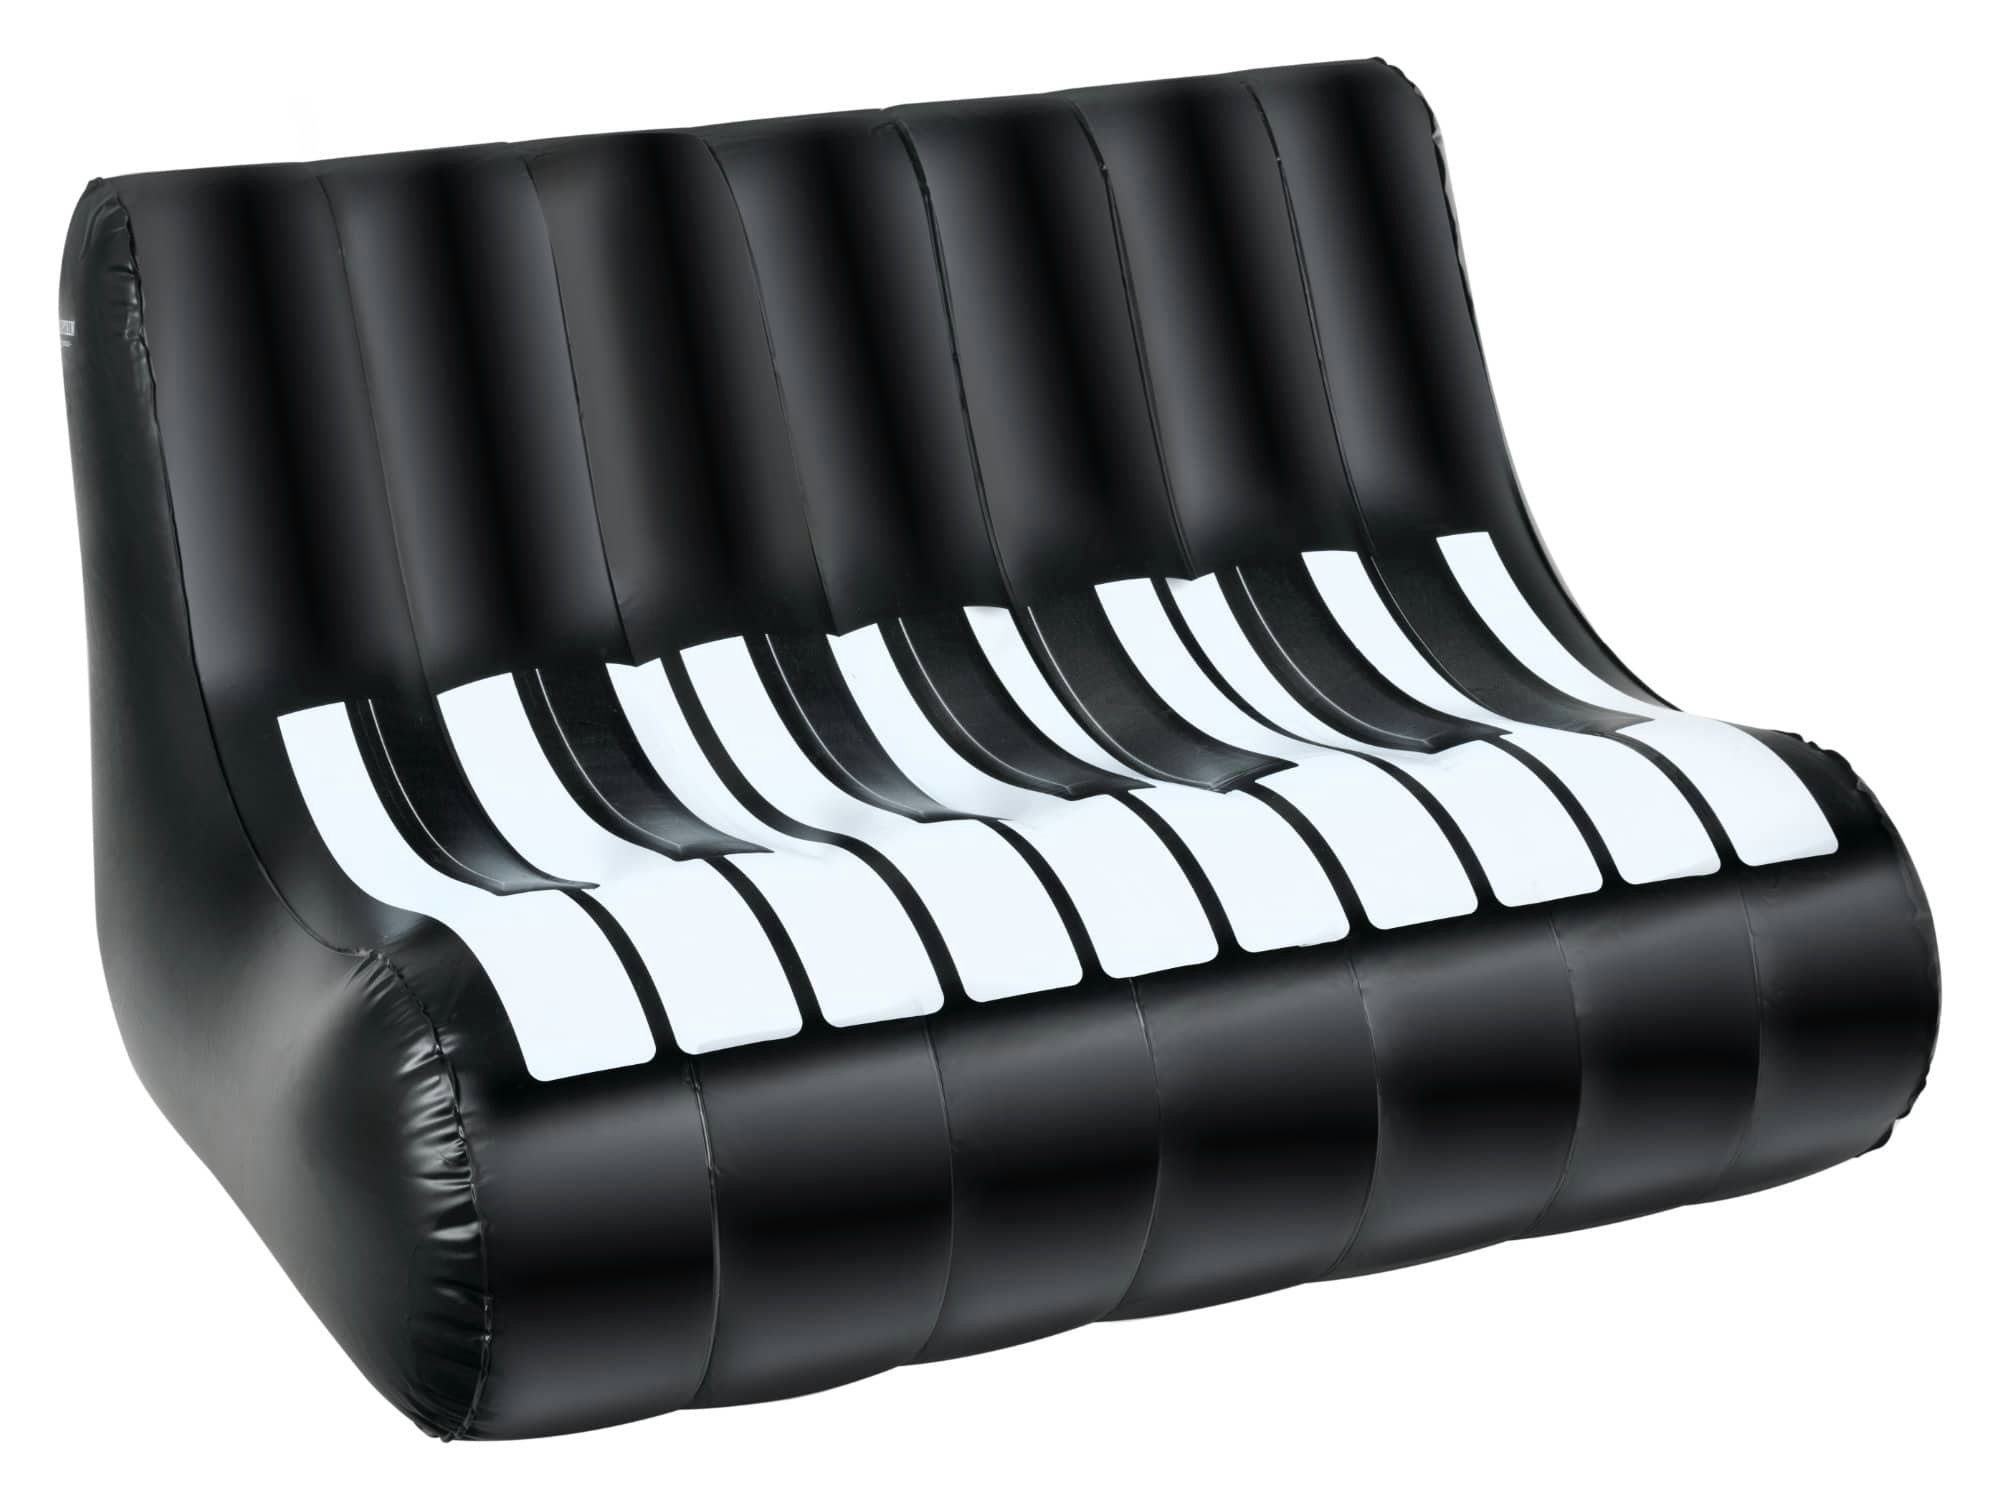 Stagecaptain Luftsofa IF-12088 - Aufblasbares Sofa Piano-Design 127 x 75 x 75 cm, Ideal für Festivals, Camping, Garten, Proberaum oder Wohnzimmer